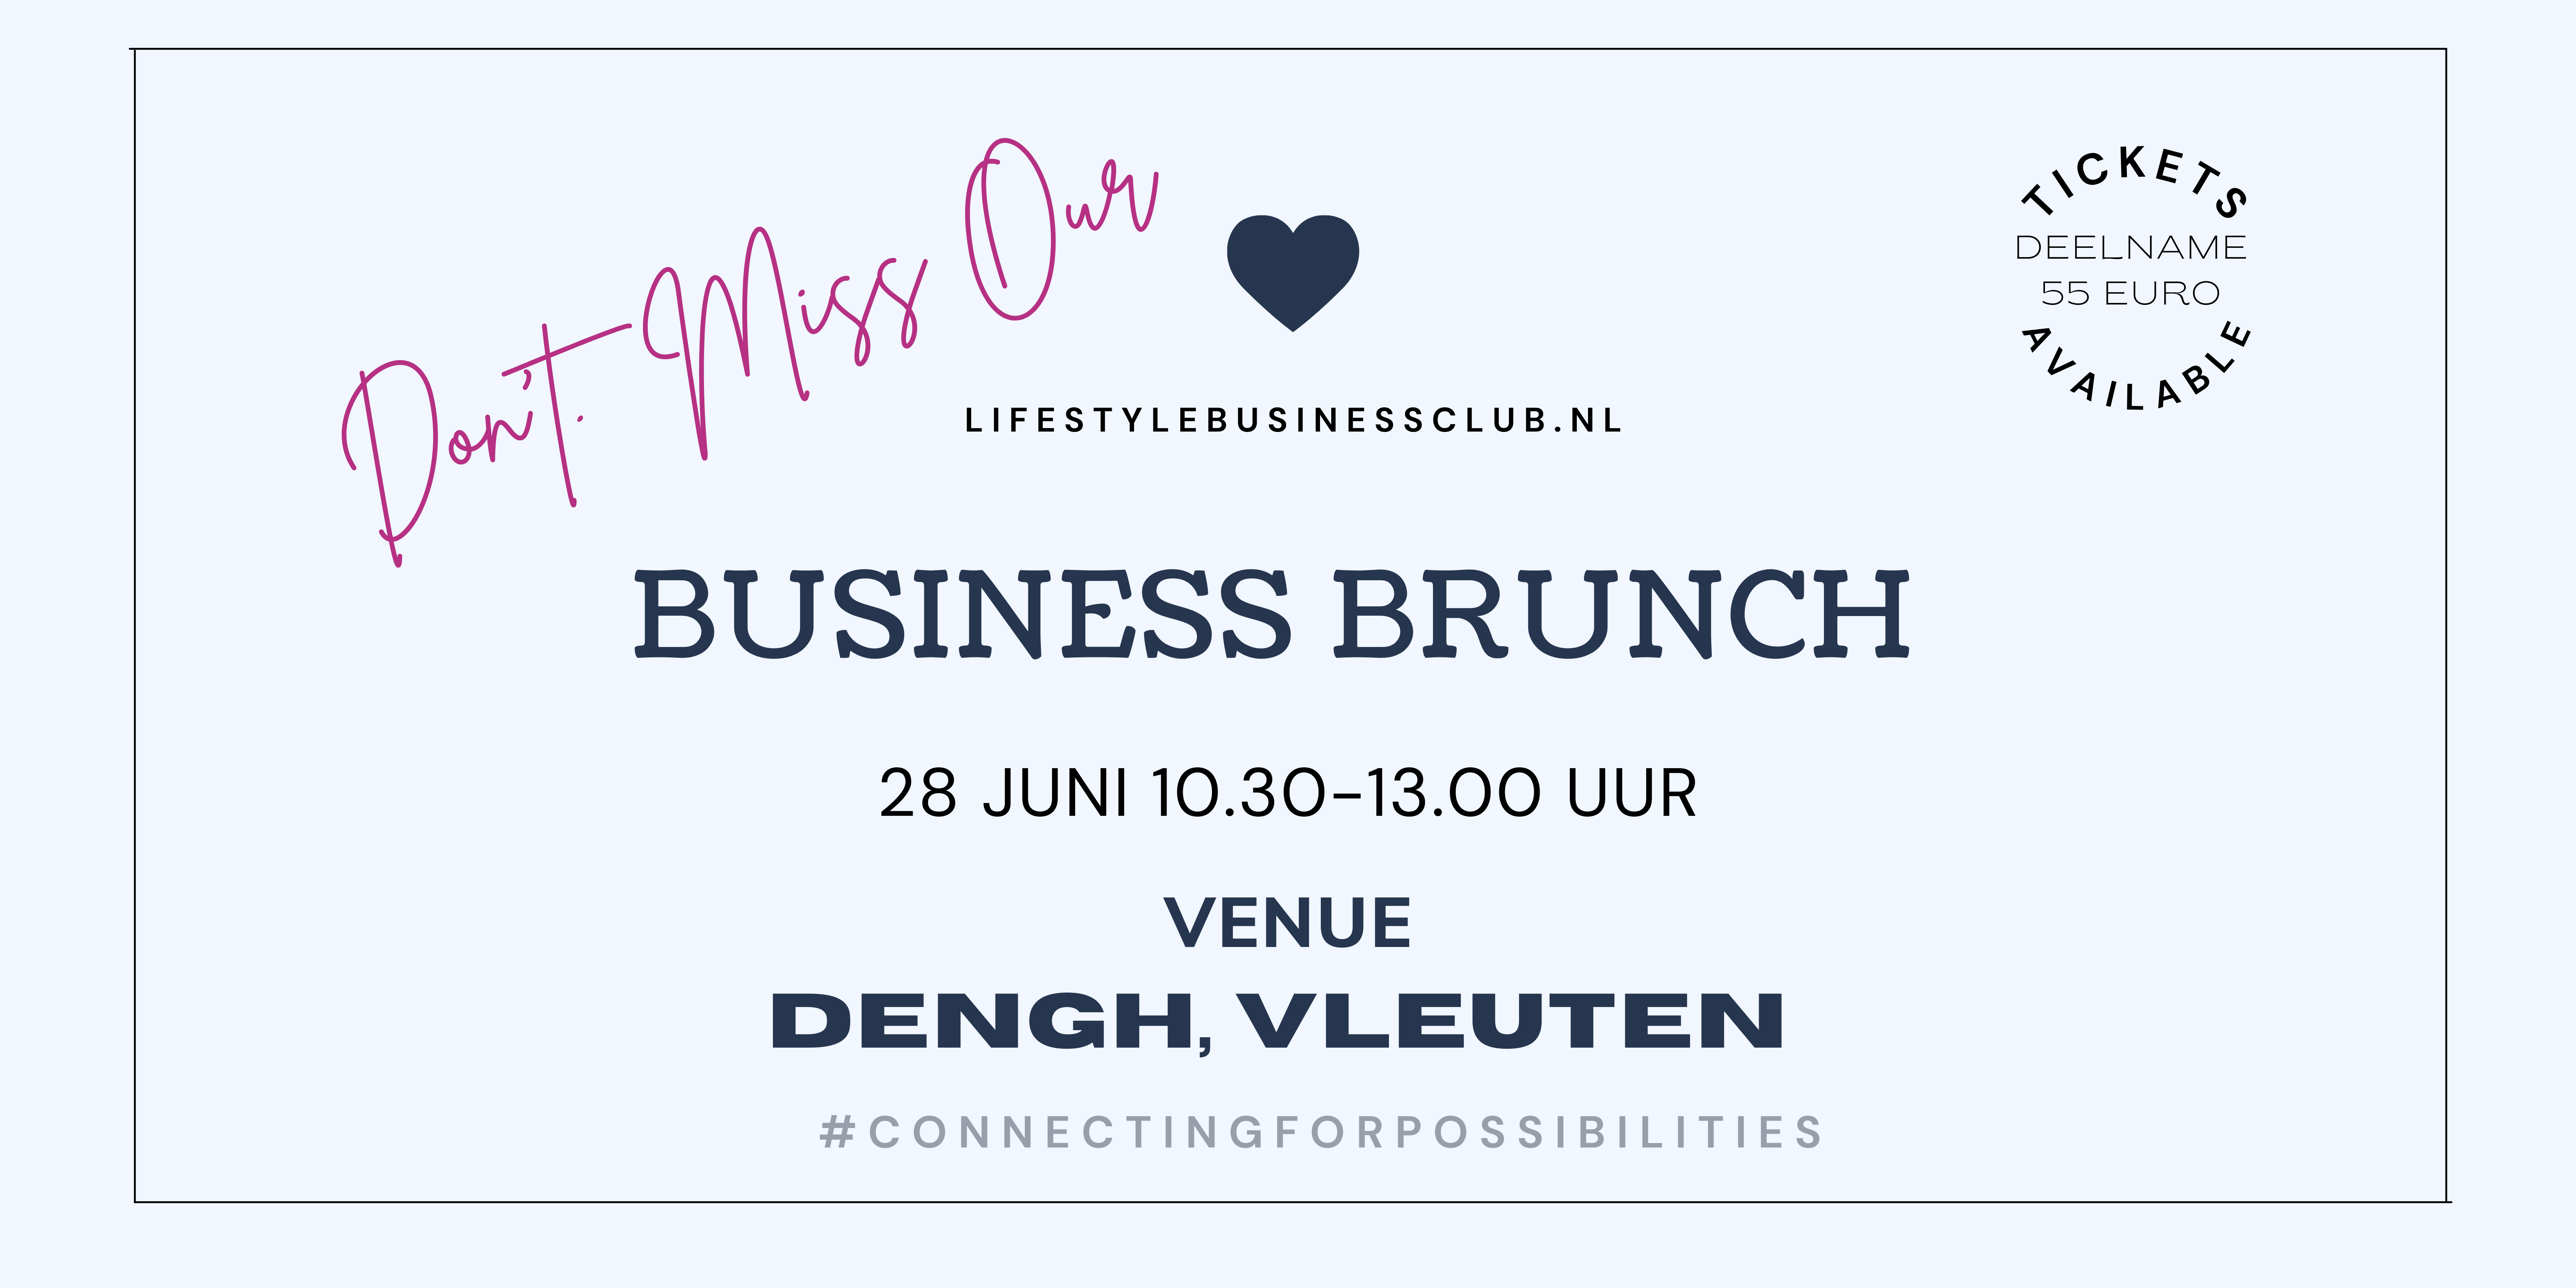 Lifestyle Business Brunch Utrecht